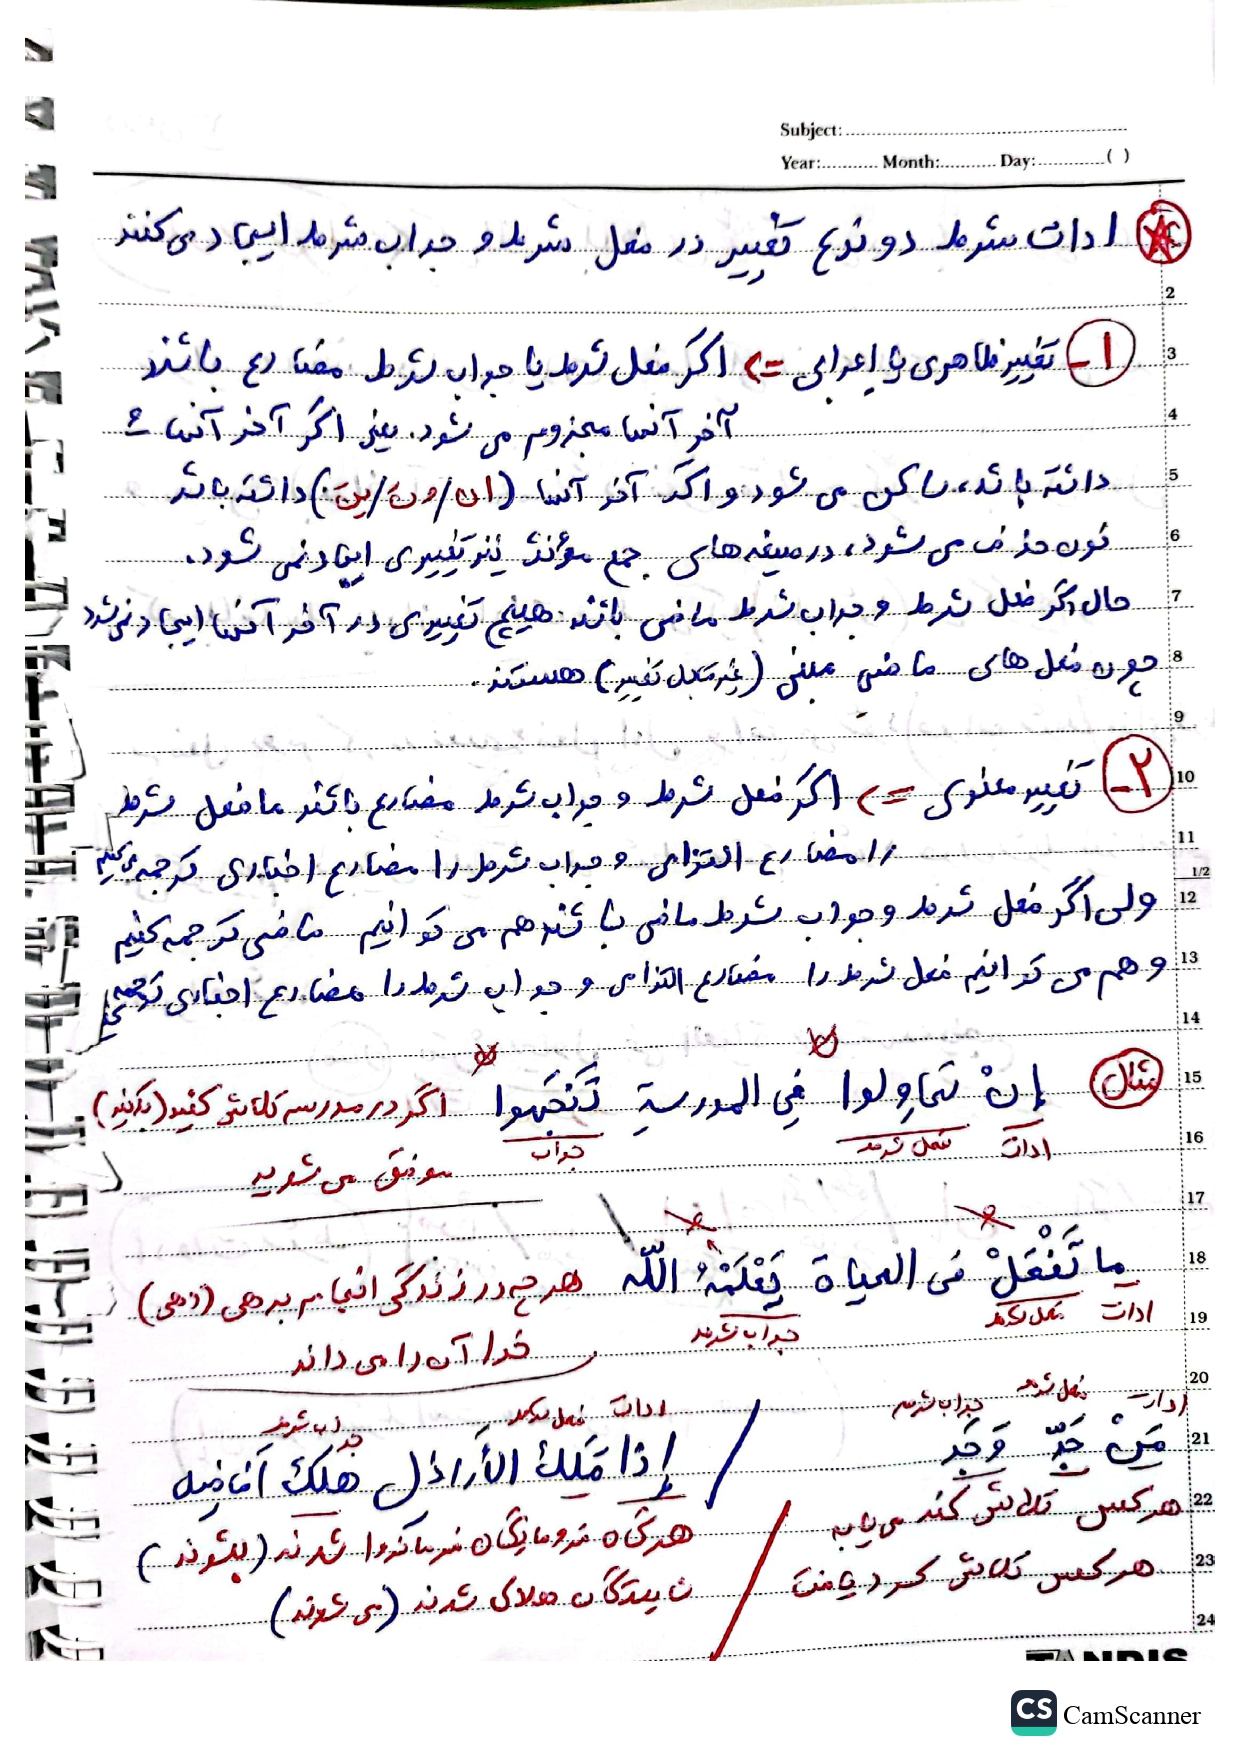 جزوه عربی یازدهم - درس ۳ اسلوب شرط 